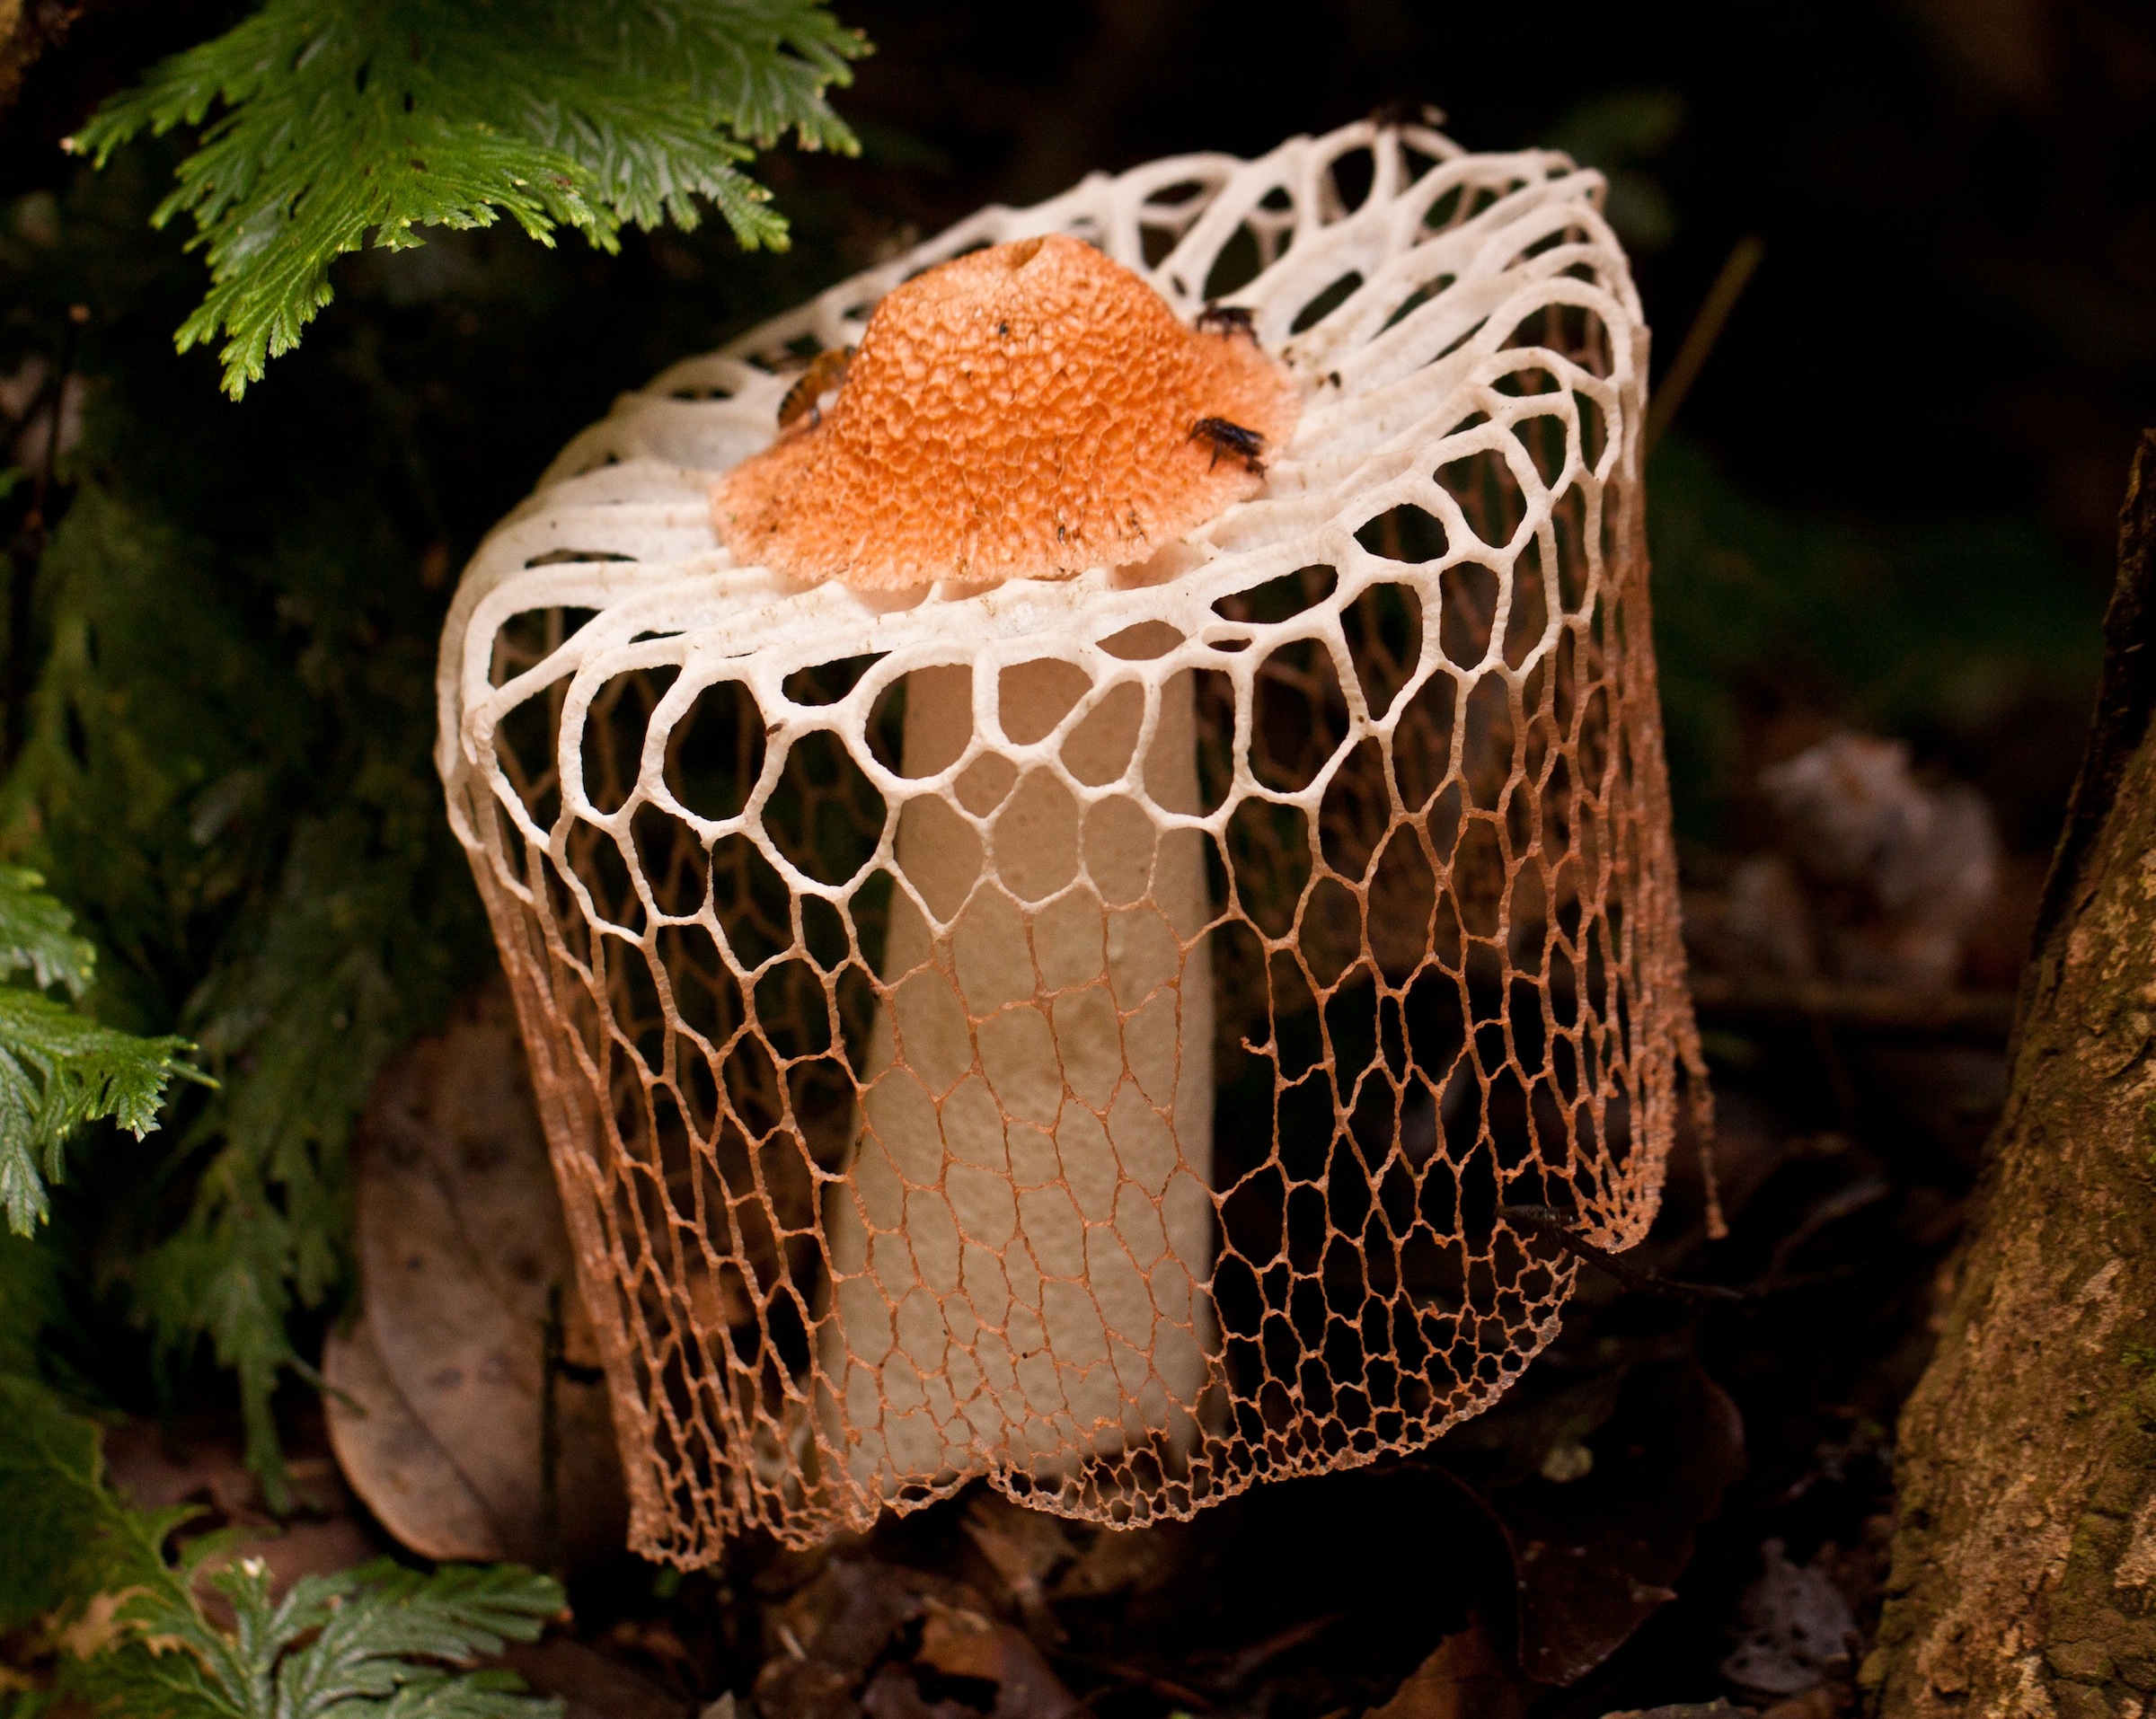 Сетконоска сдвоенная: описание, лечебные свойства, где растет гриб+фото